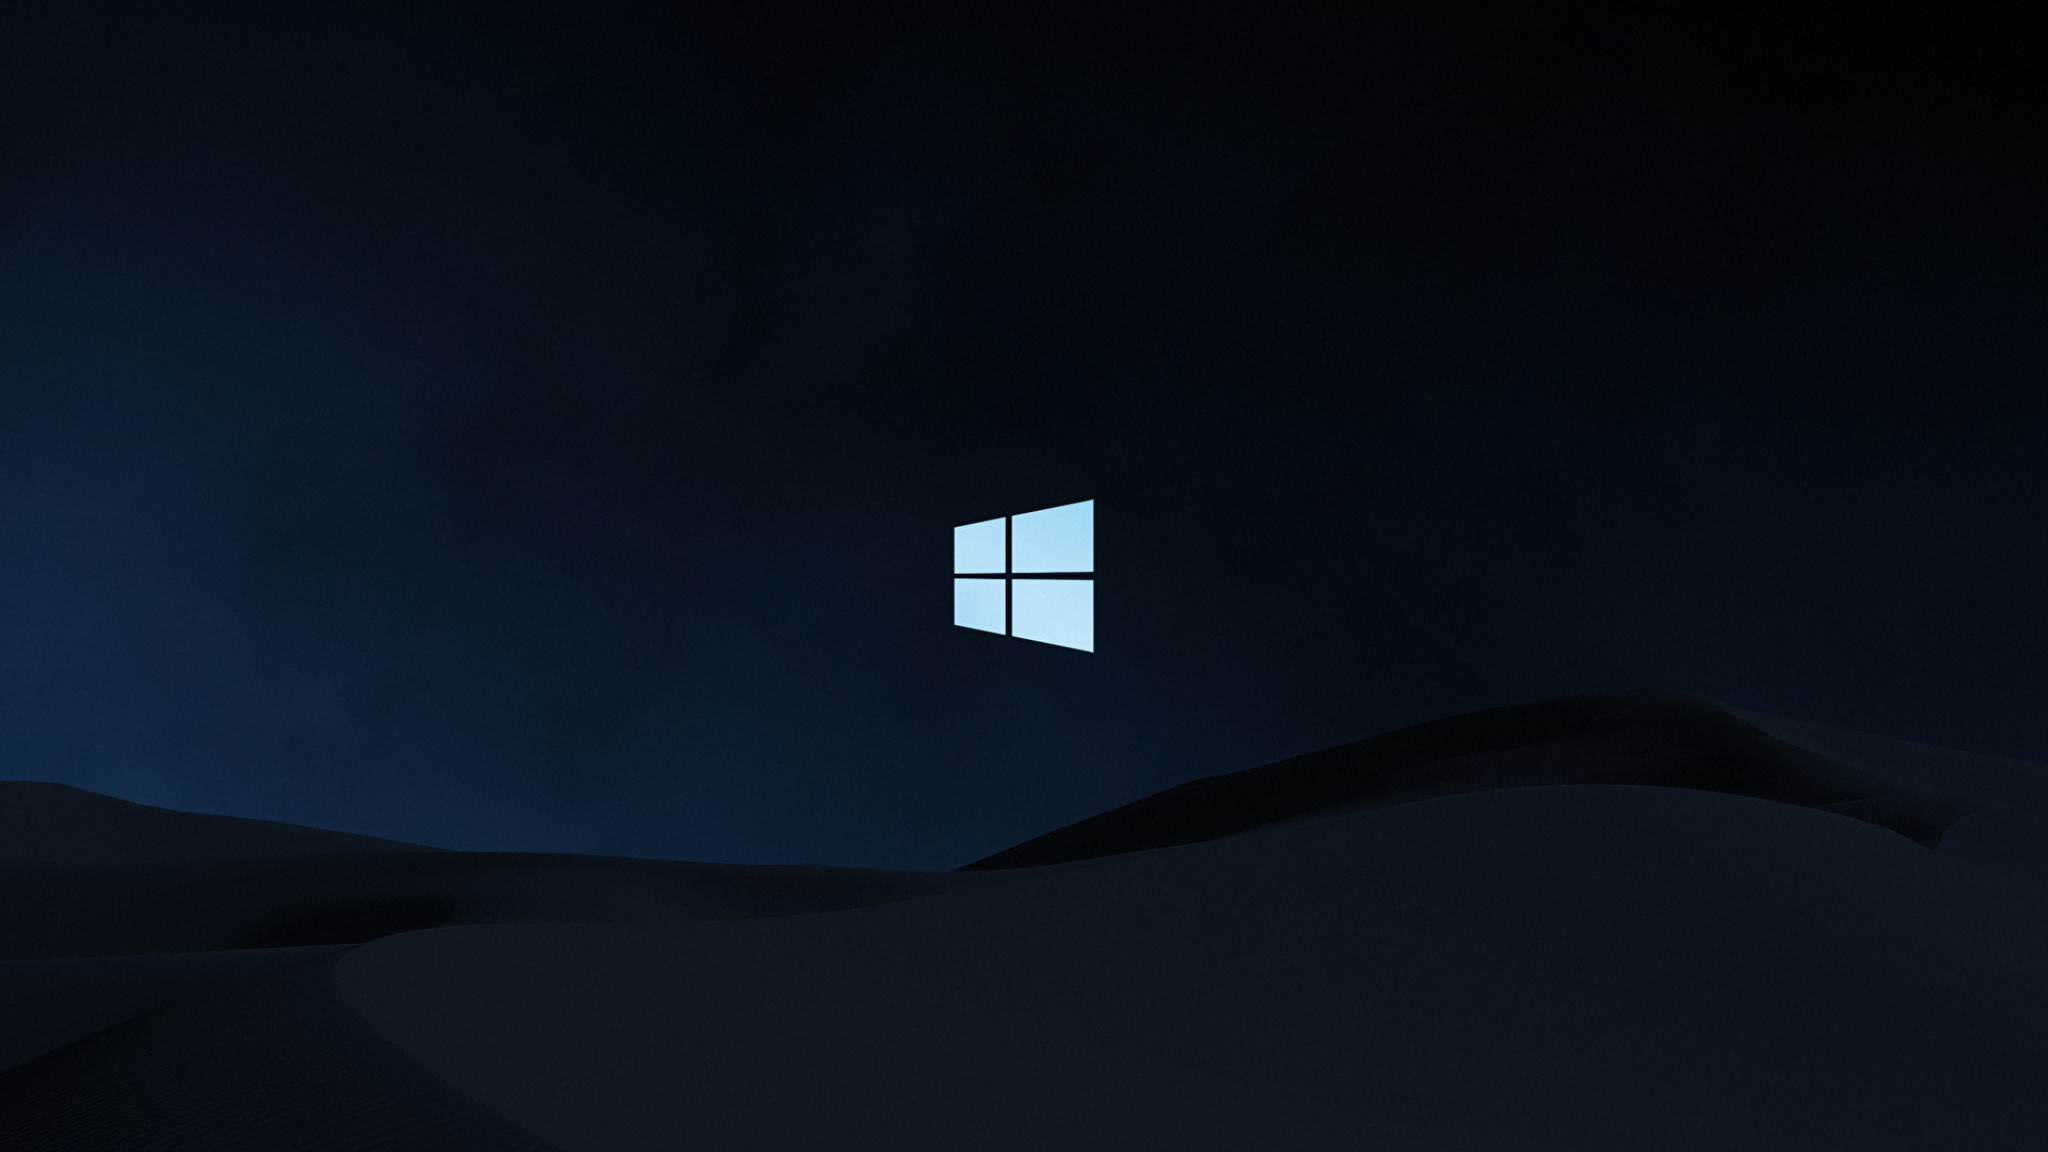 2048x1152 Windows 10 Clean Dark 2048x1152 Resolution Background